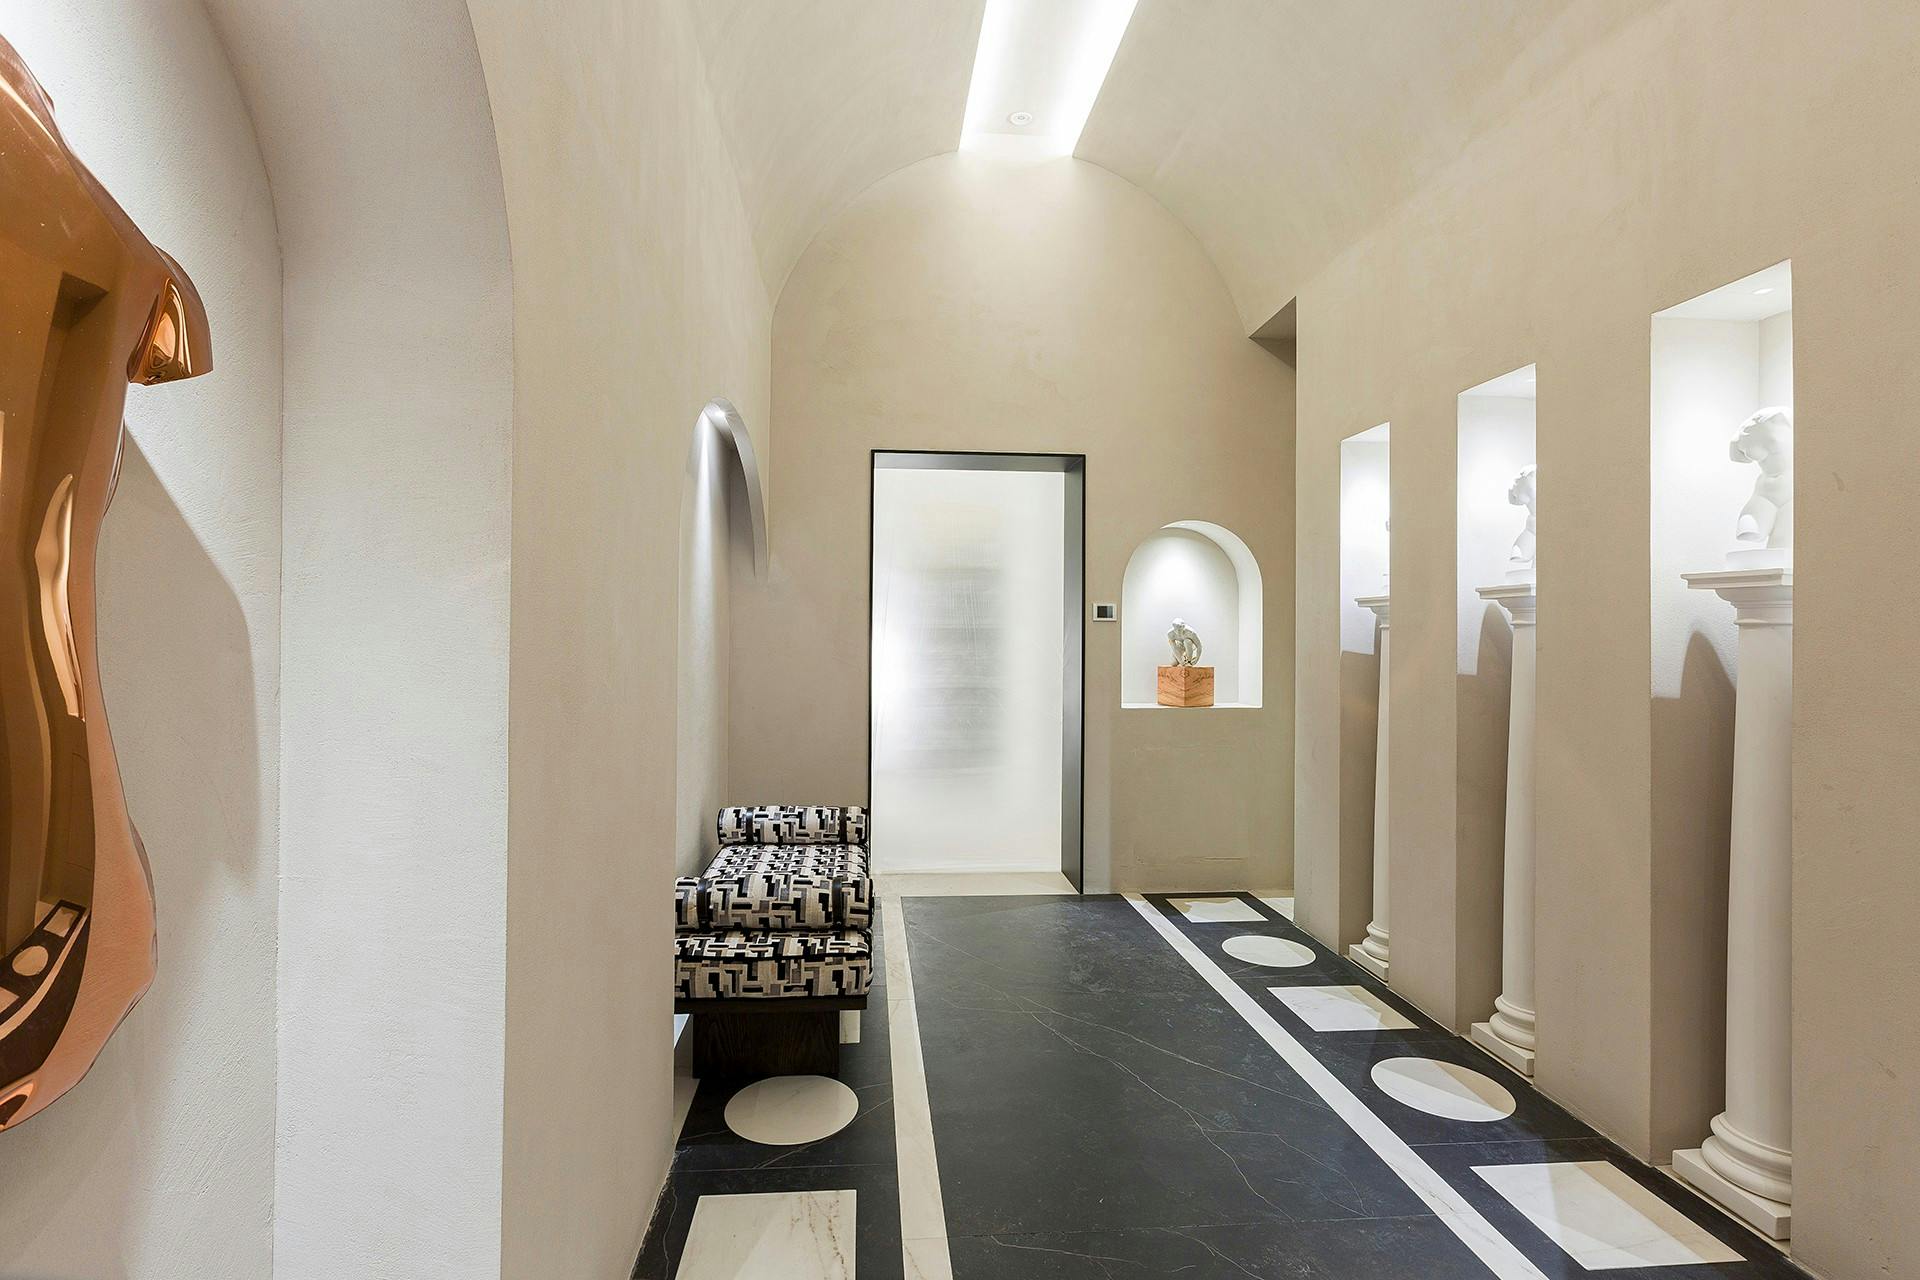 Numero immagine 36 della sezione corrente di A contemporary public toilet design inspired by Roman public baths di Cosentino Italia